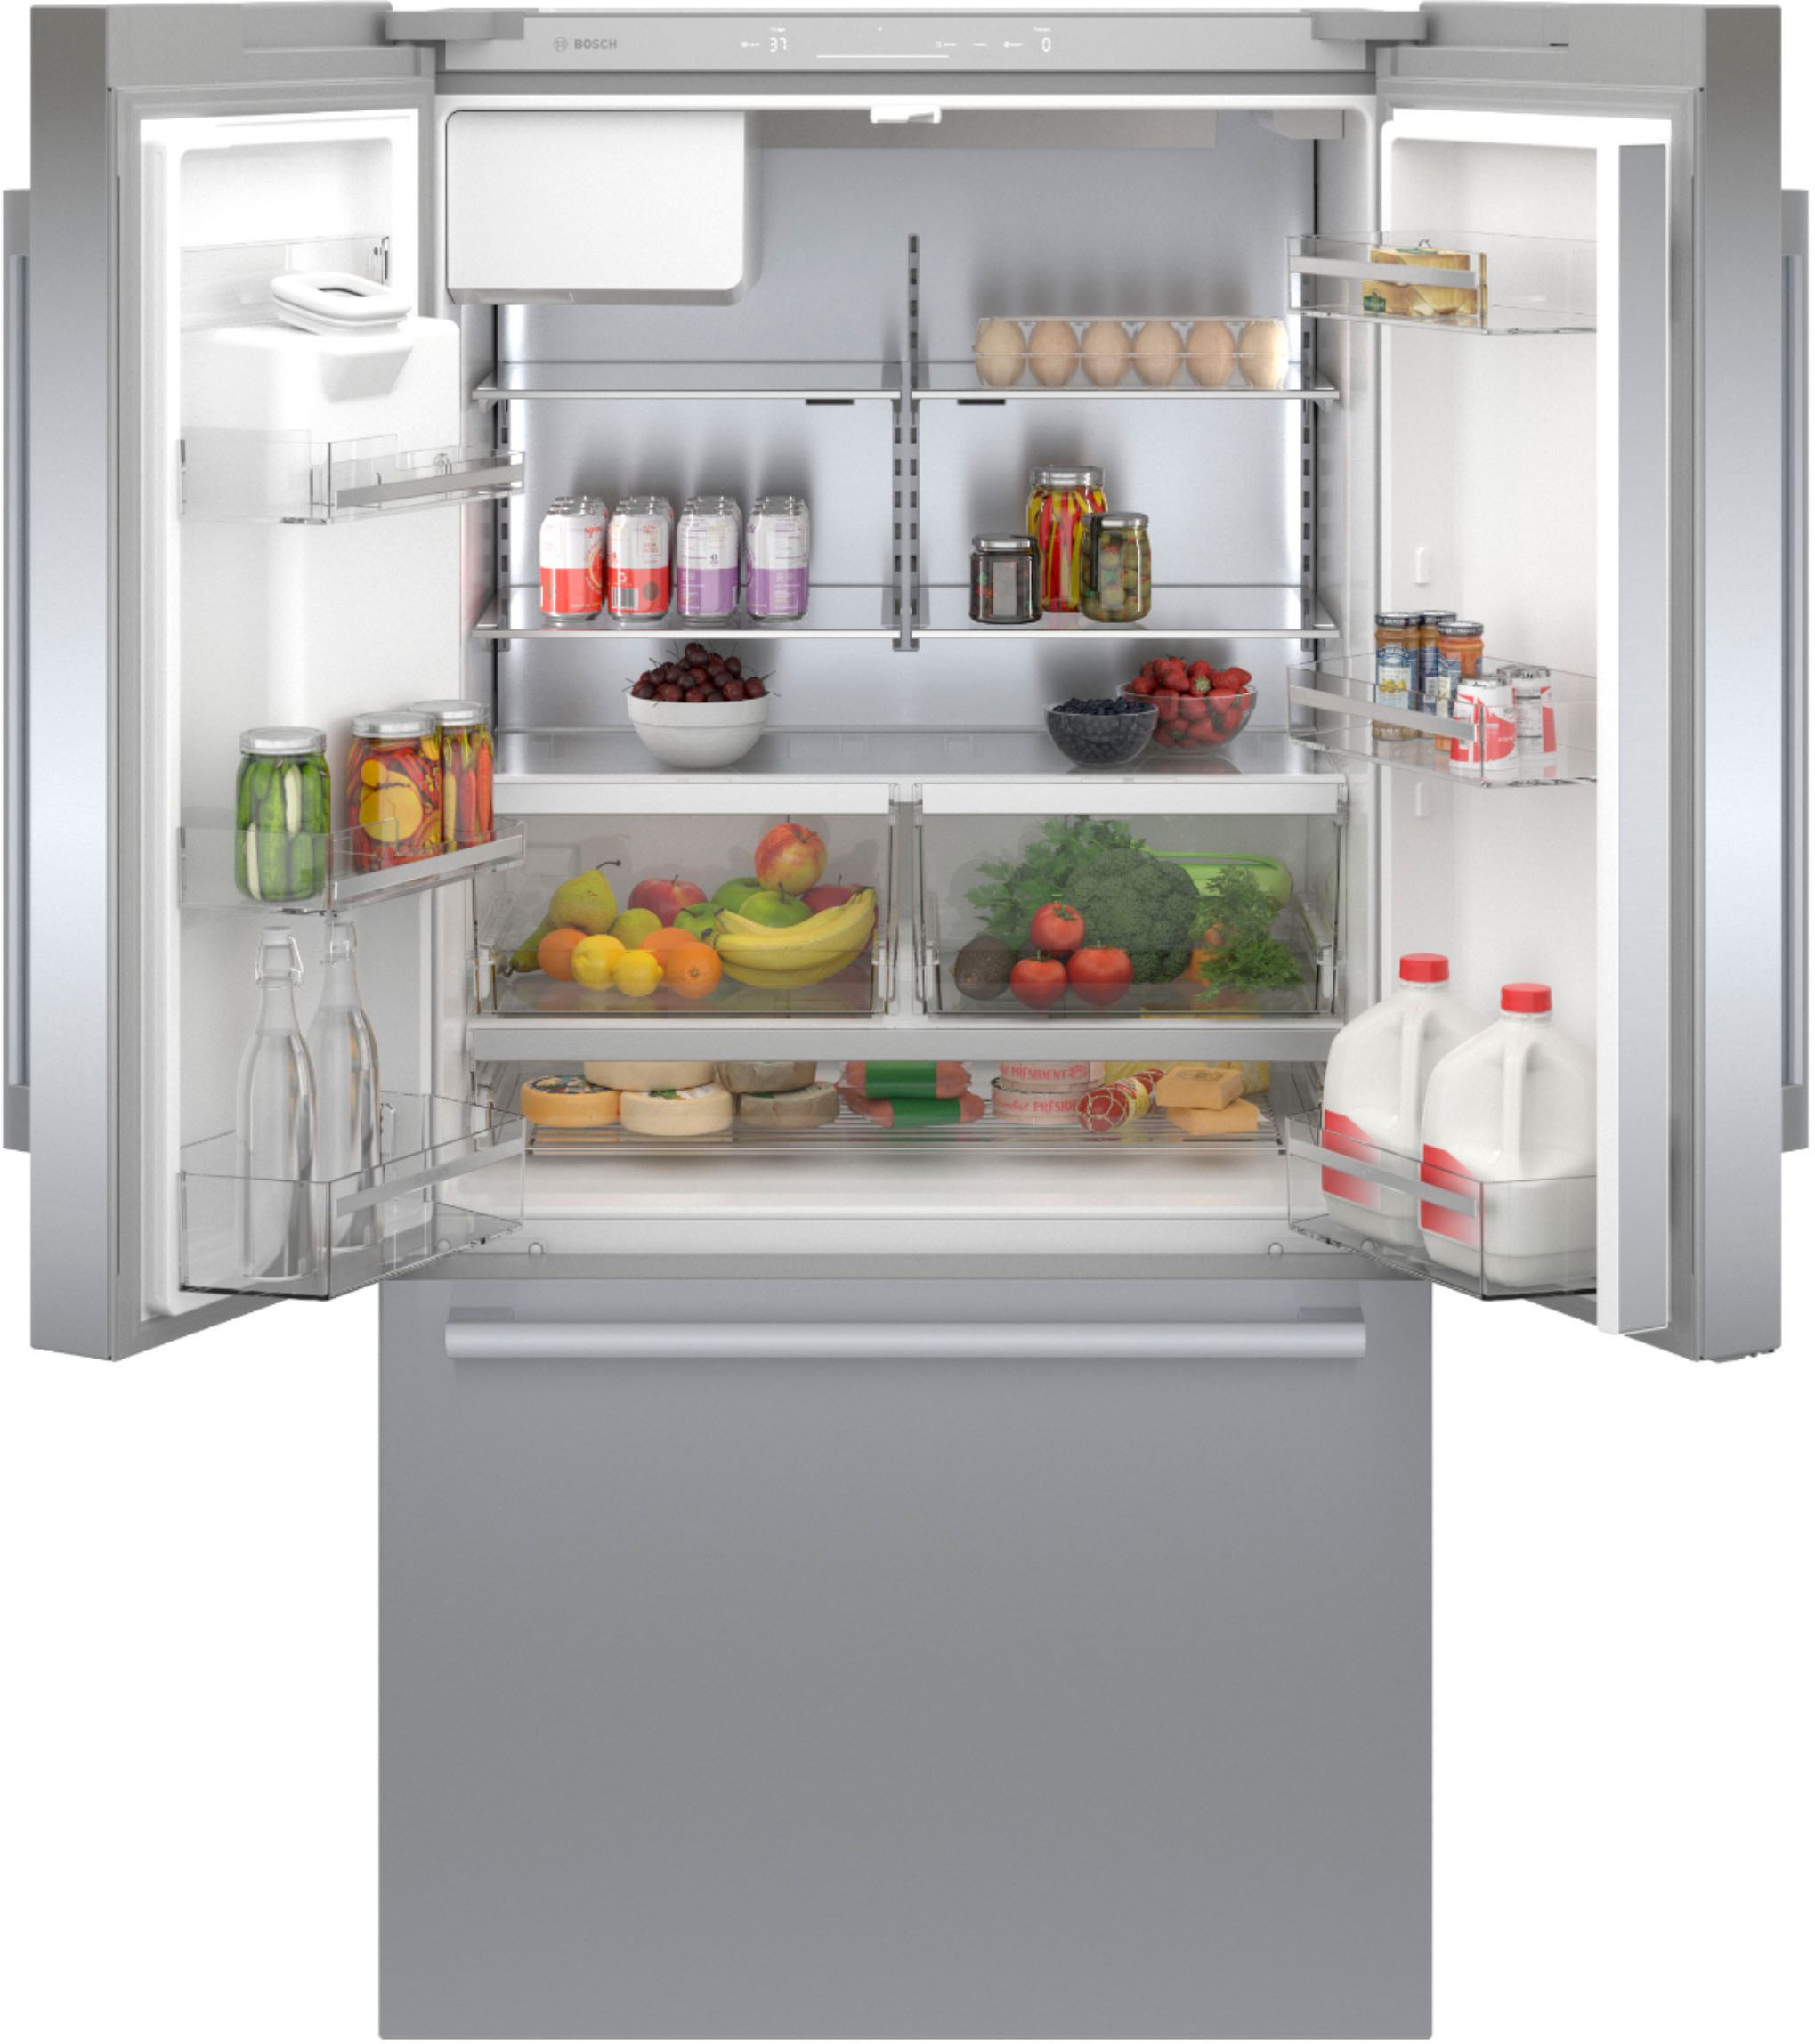 Bosch 500 Series Refrigerator Manual